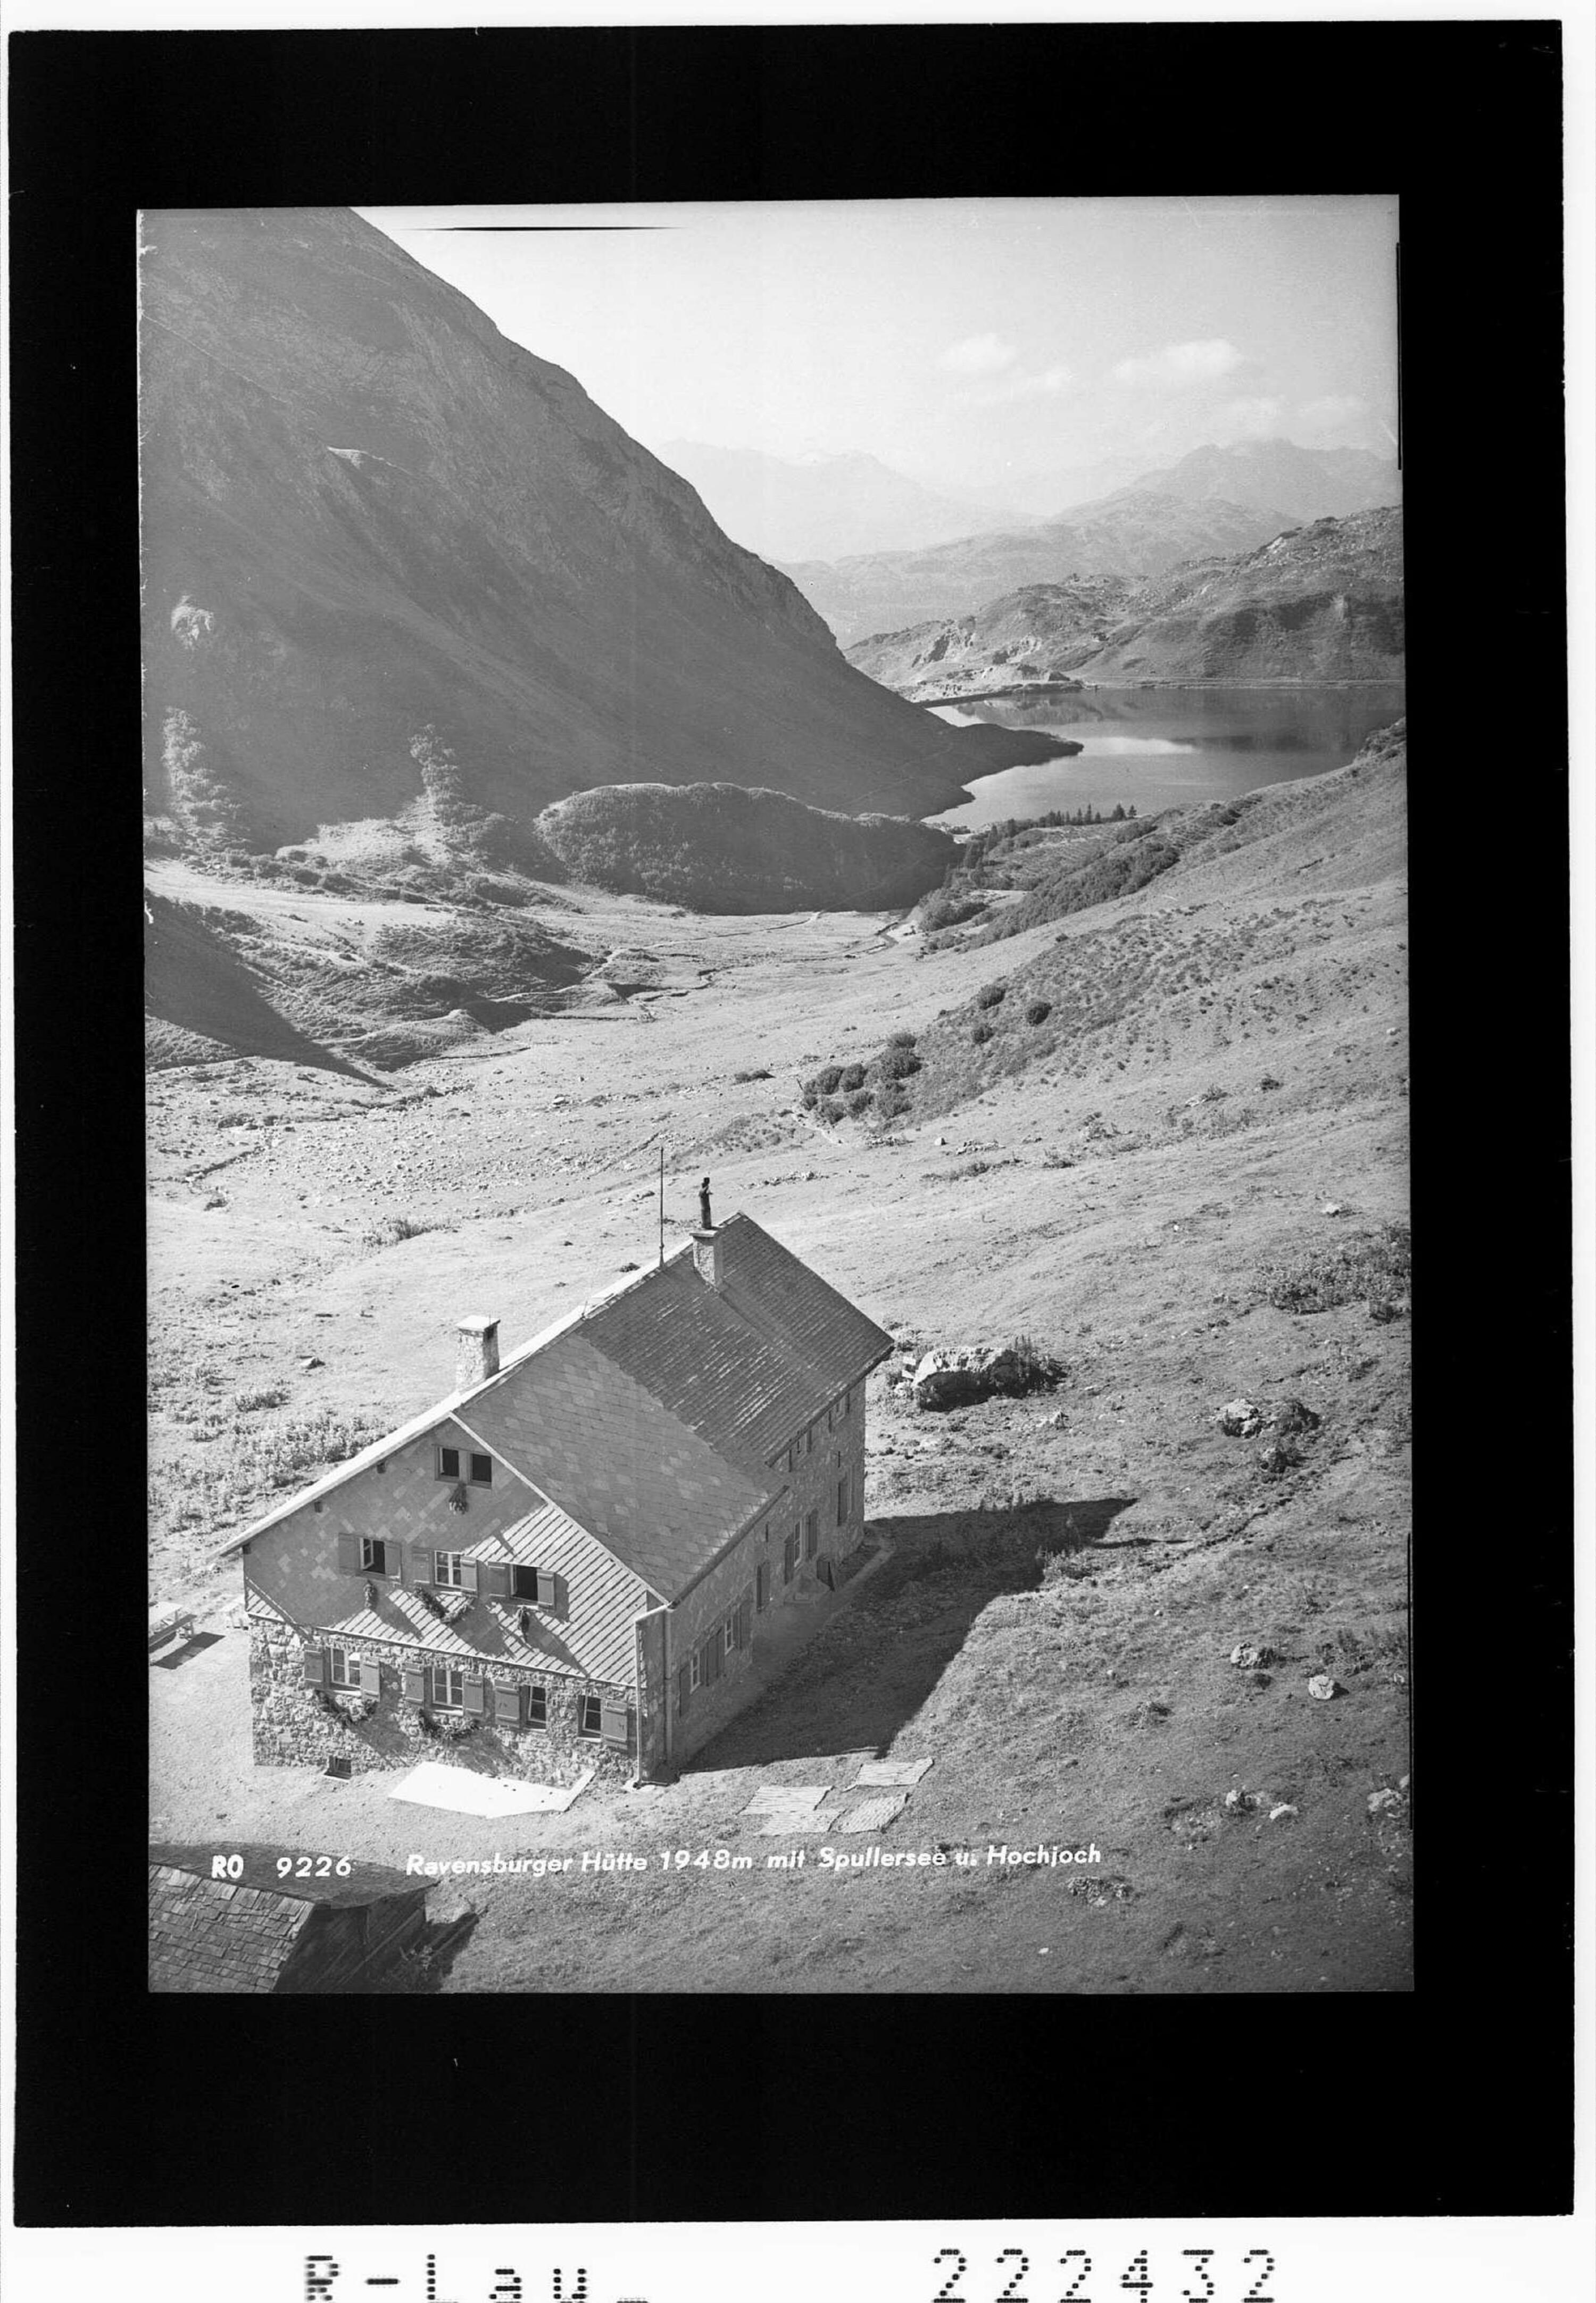 Ravensburger Hütte 1948 m mit Spullersee und Hochjoch></div>


    <hr>
    <div class=